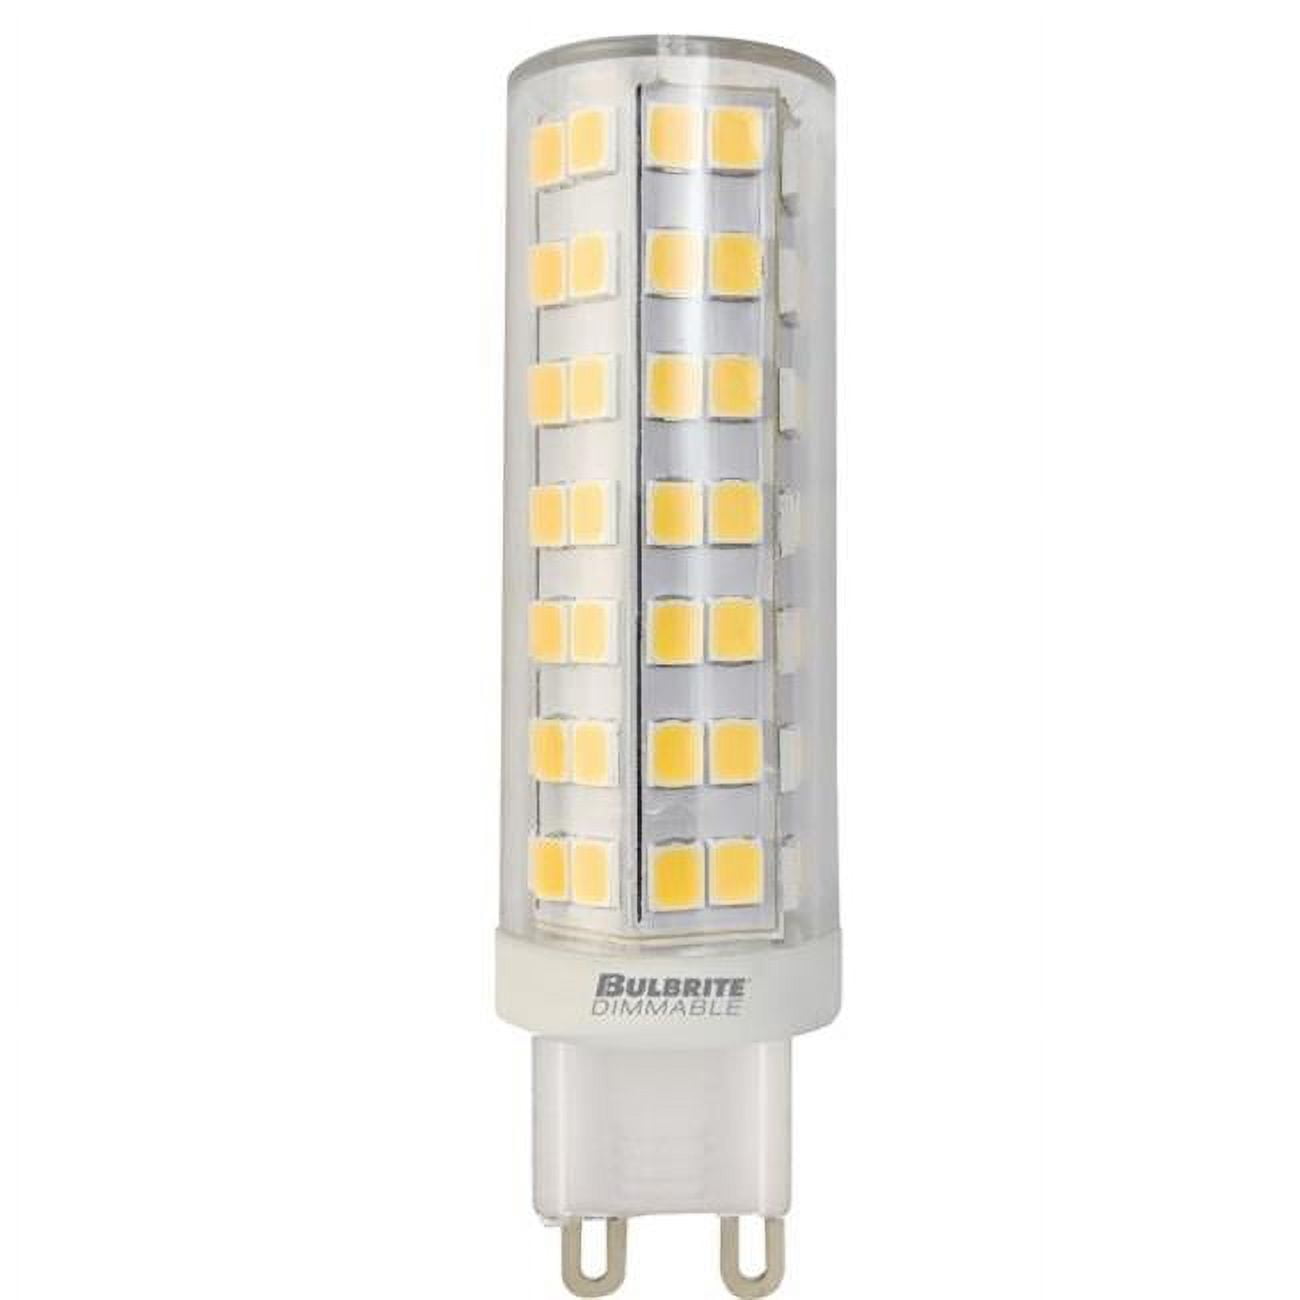 Picture of Bulbrite Pack of (2) 6.5 Watt 120V Clear T6 LED Mini Light Bulbs with Bi-Pin (G9) Base  3000K Soft White Light  700 Lumens